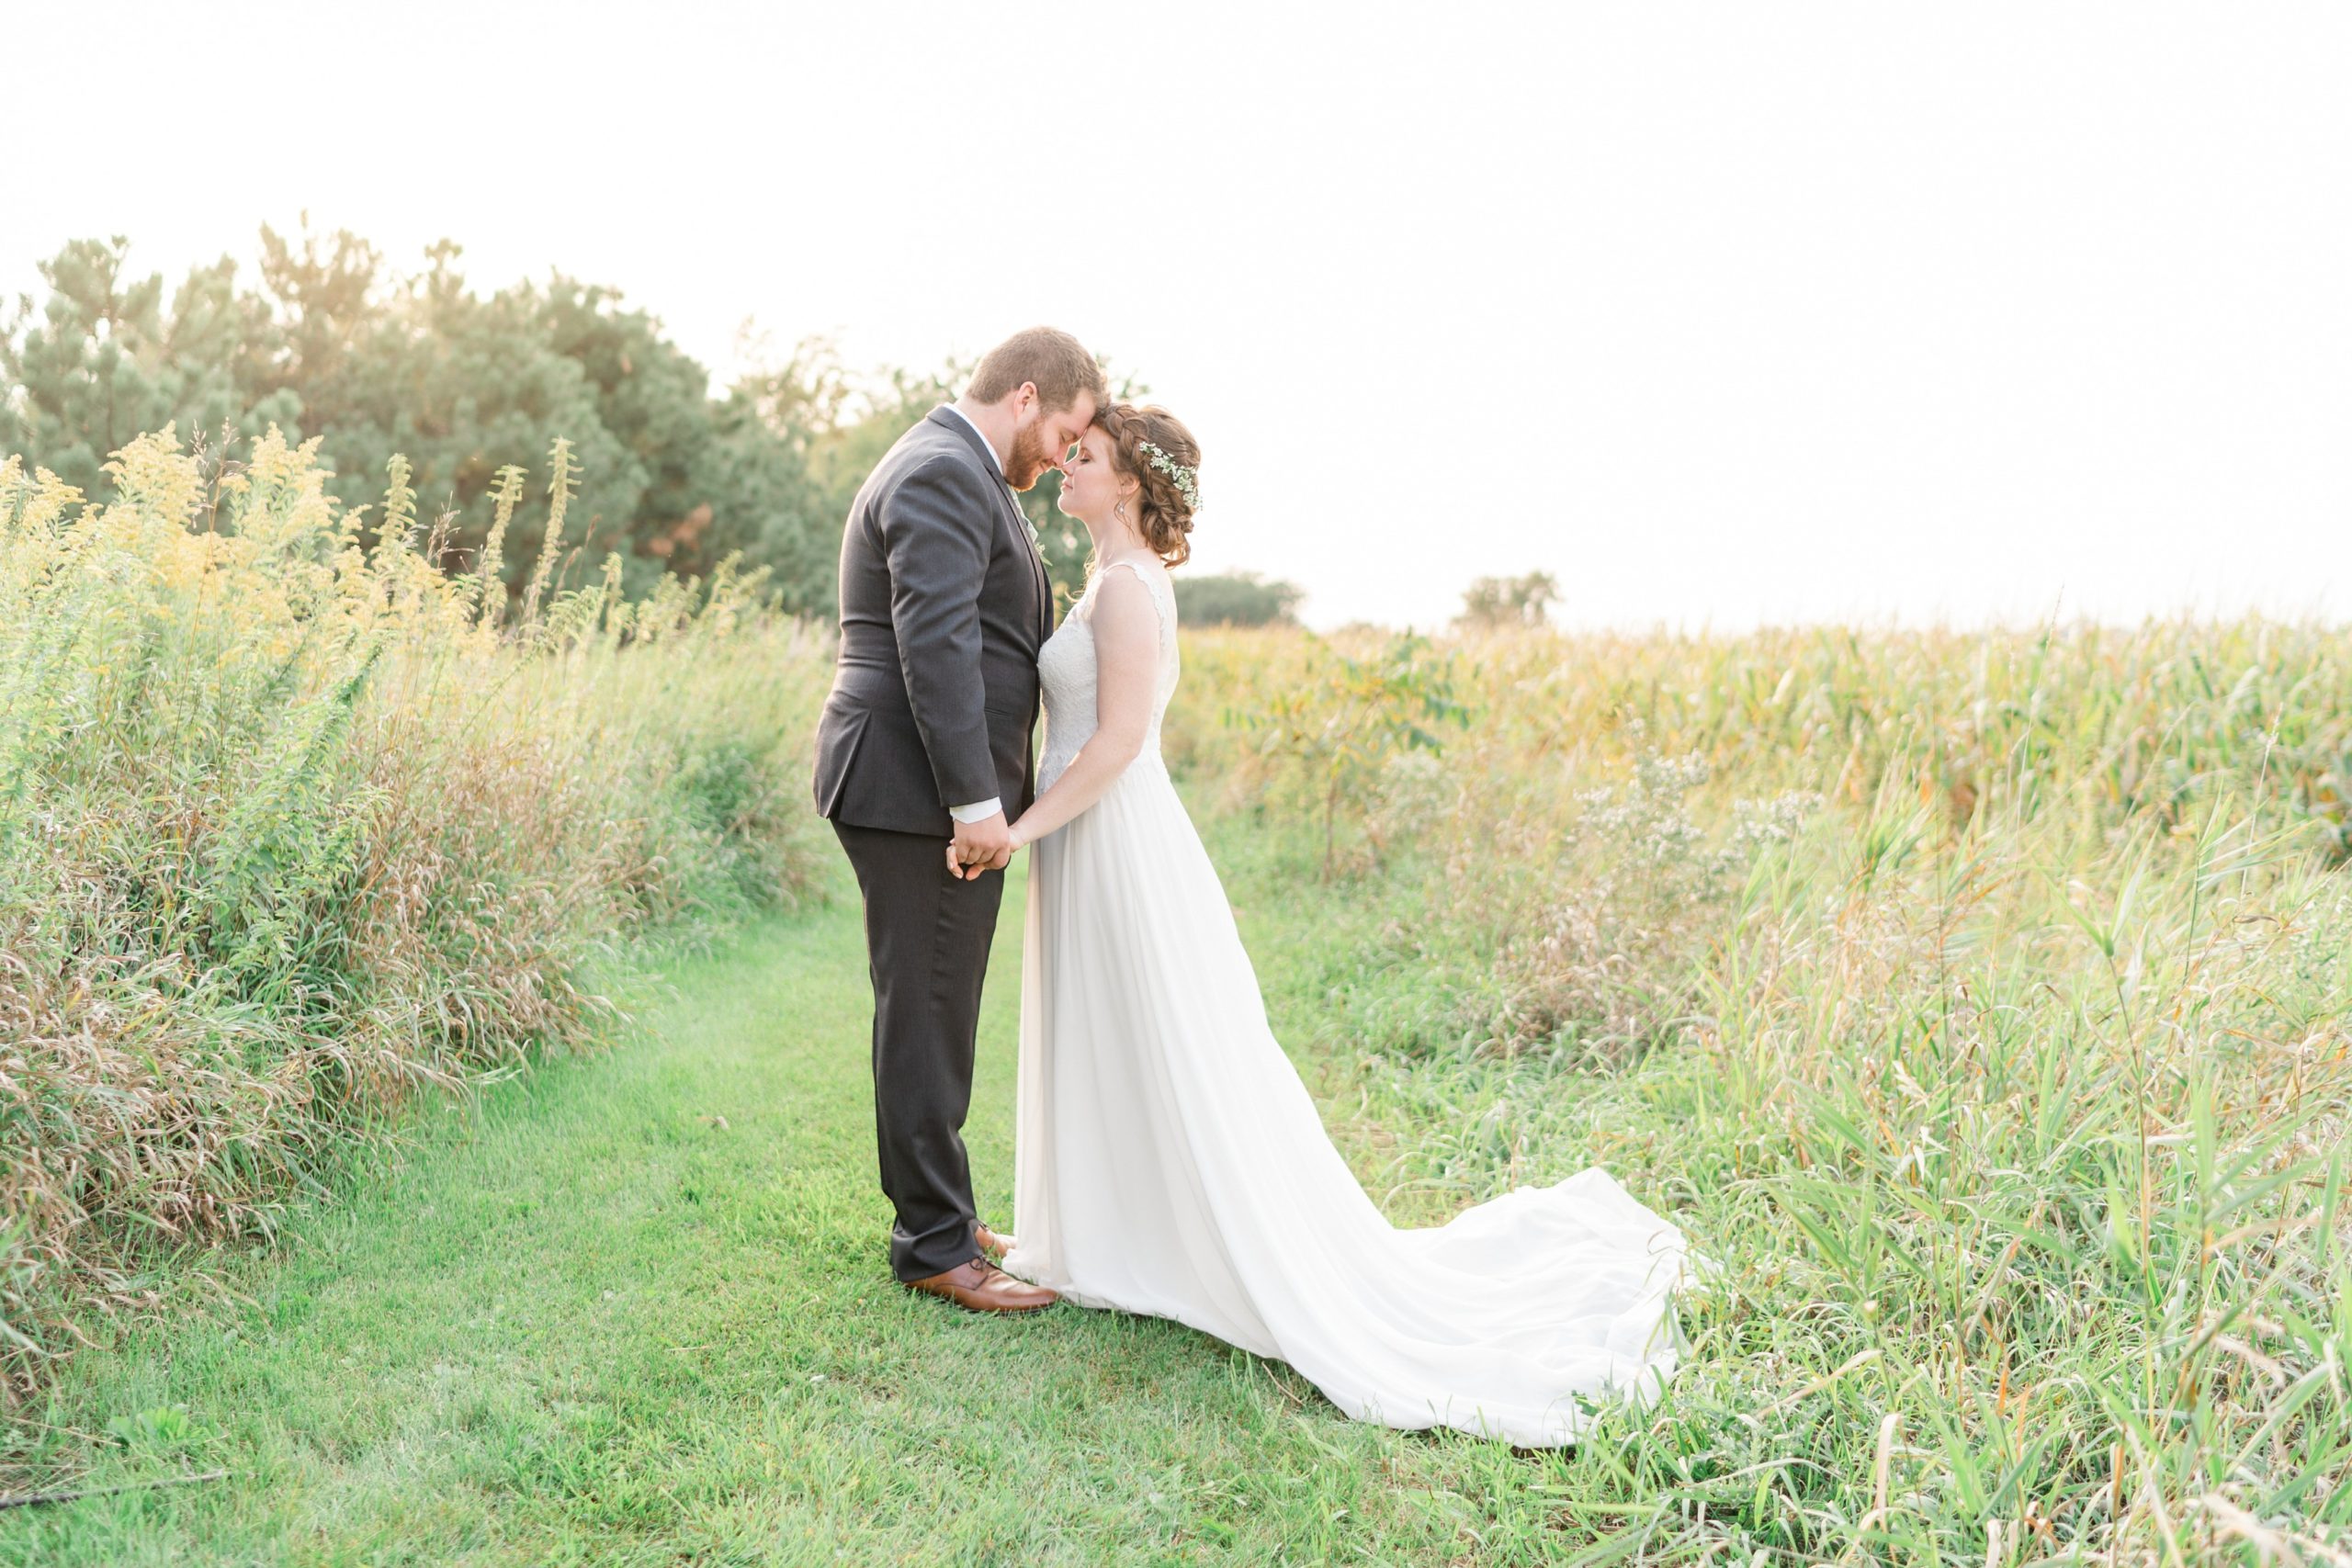 Best Wedding Photographer Minnesota Bride & Groom in Meadow